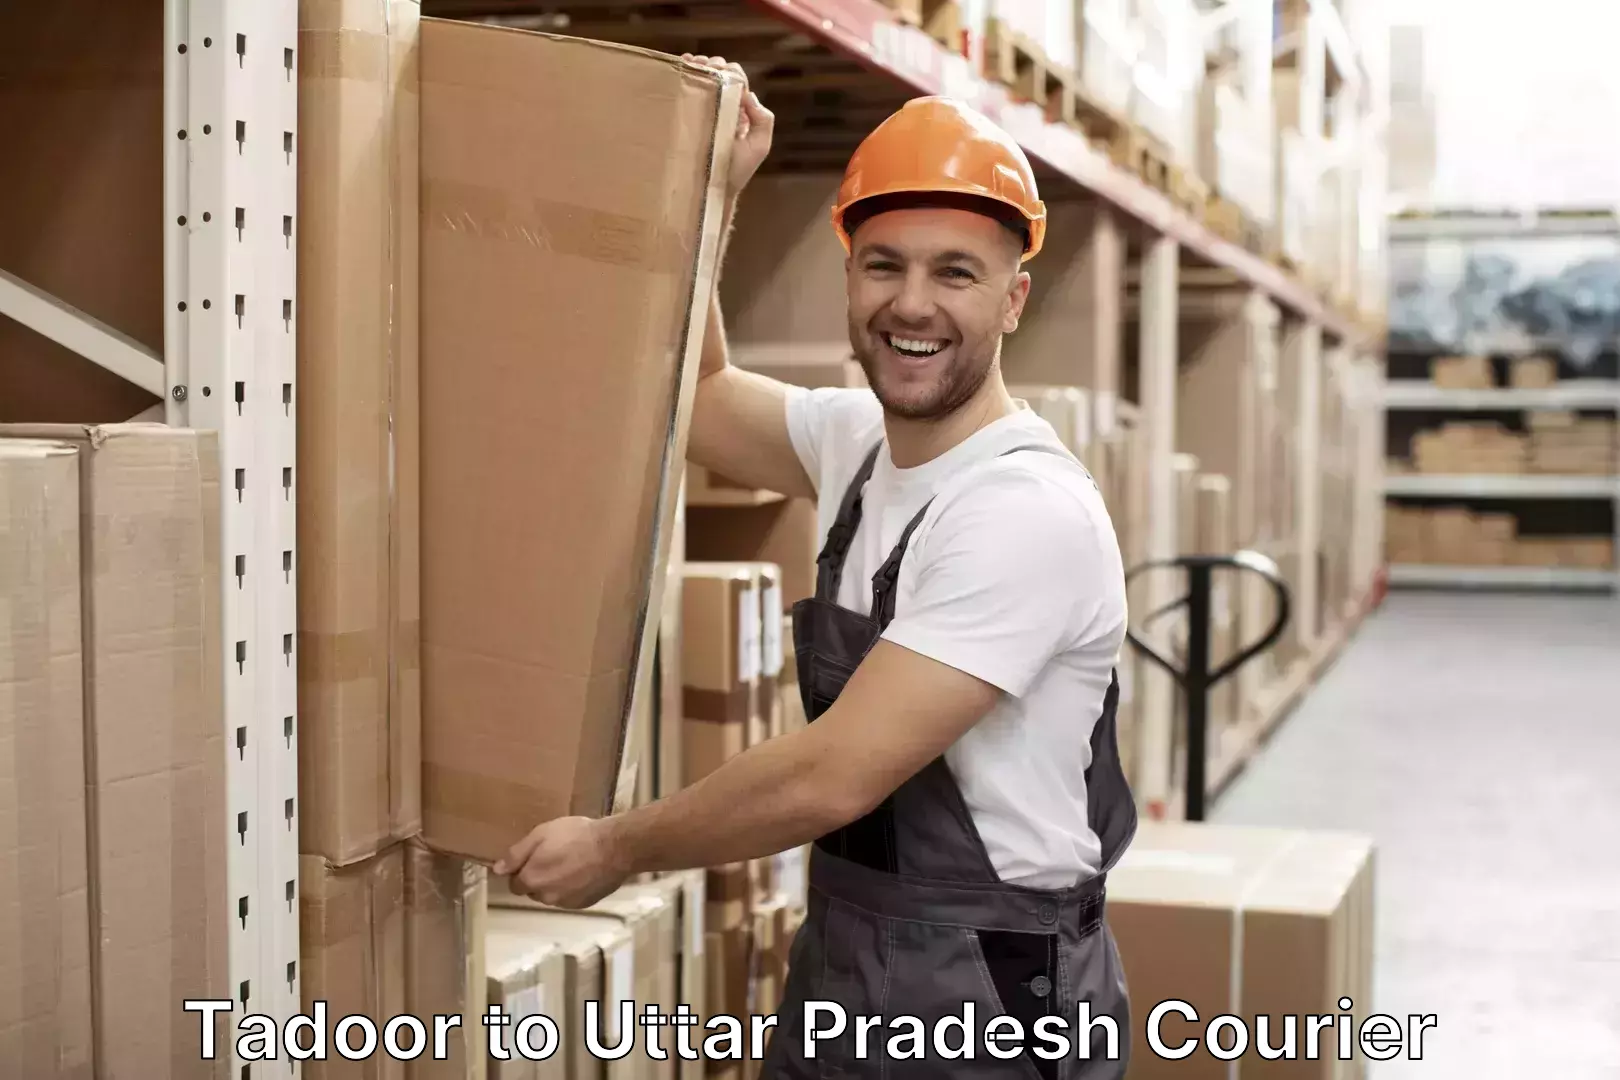 Luggage delivery providers Tadoor to Uttar Pradesh